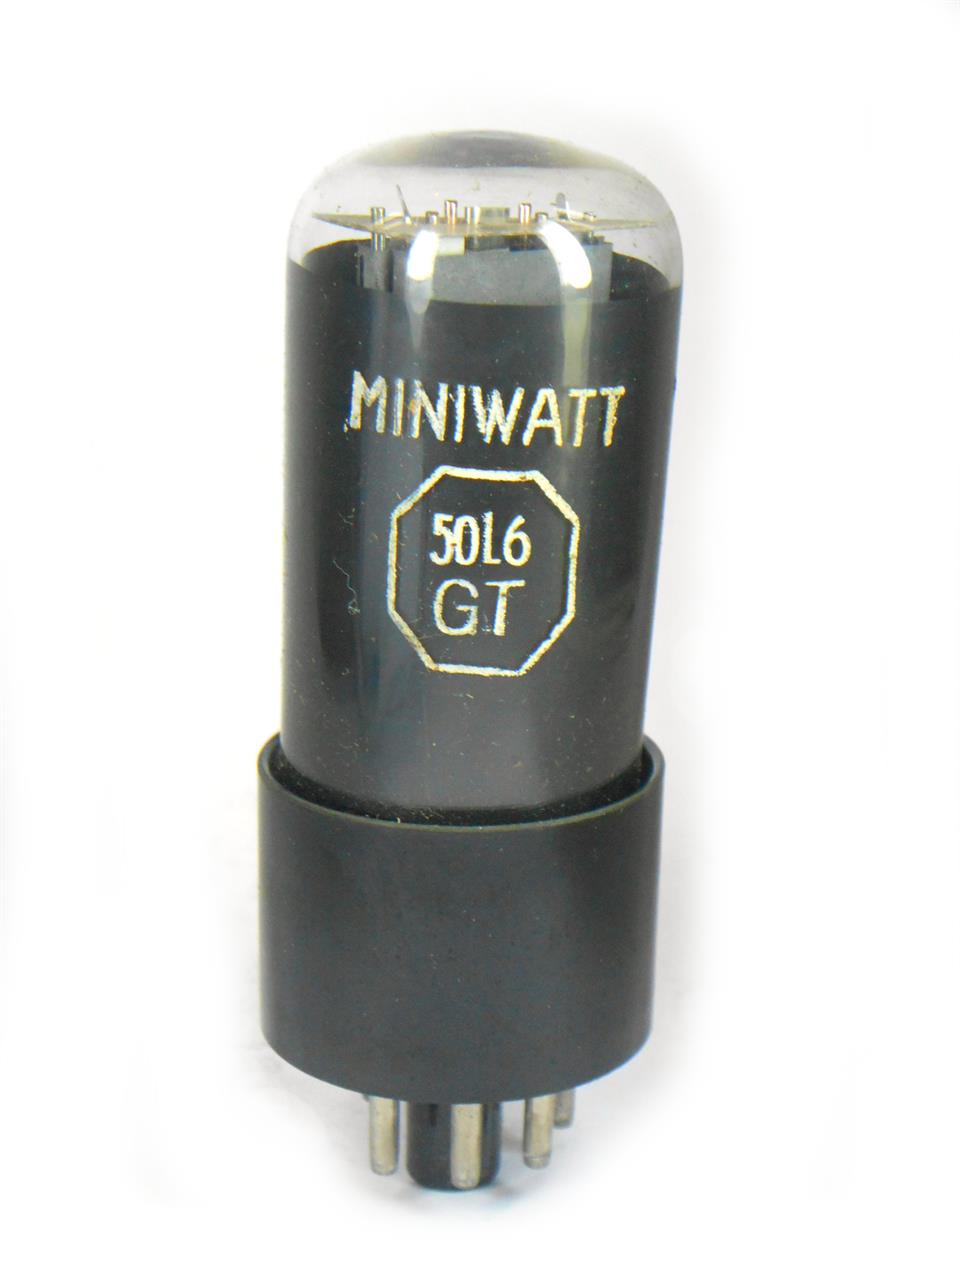 Válvulas pentodos de saída para rádios valvulados rabo-quente - Válvula 50L6GT Miniwatt